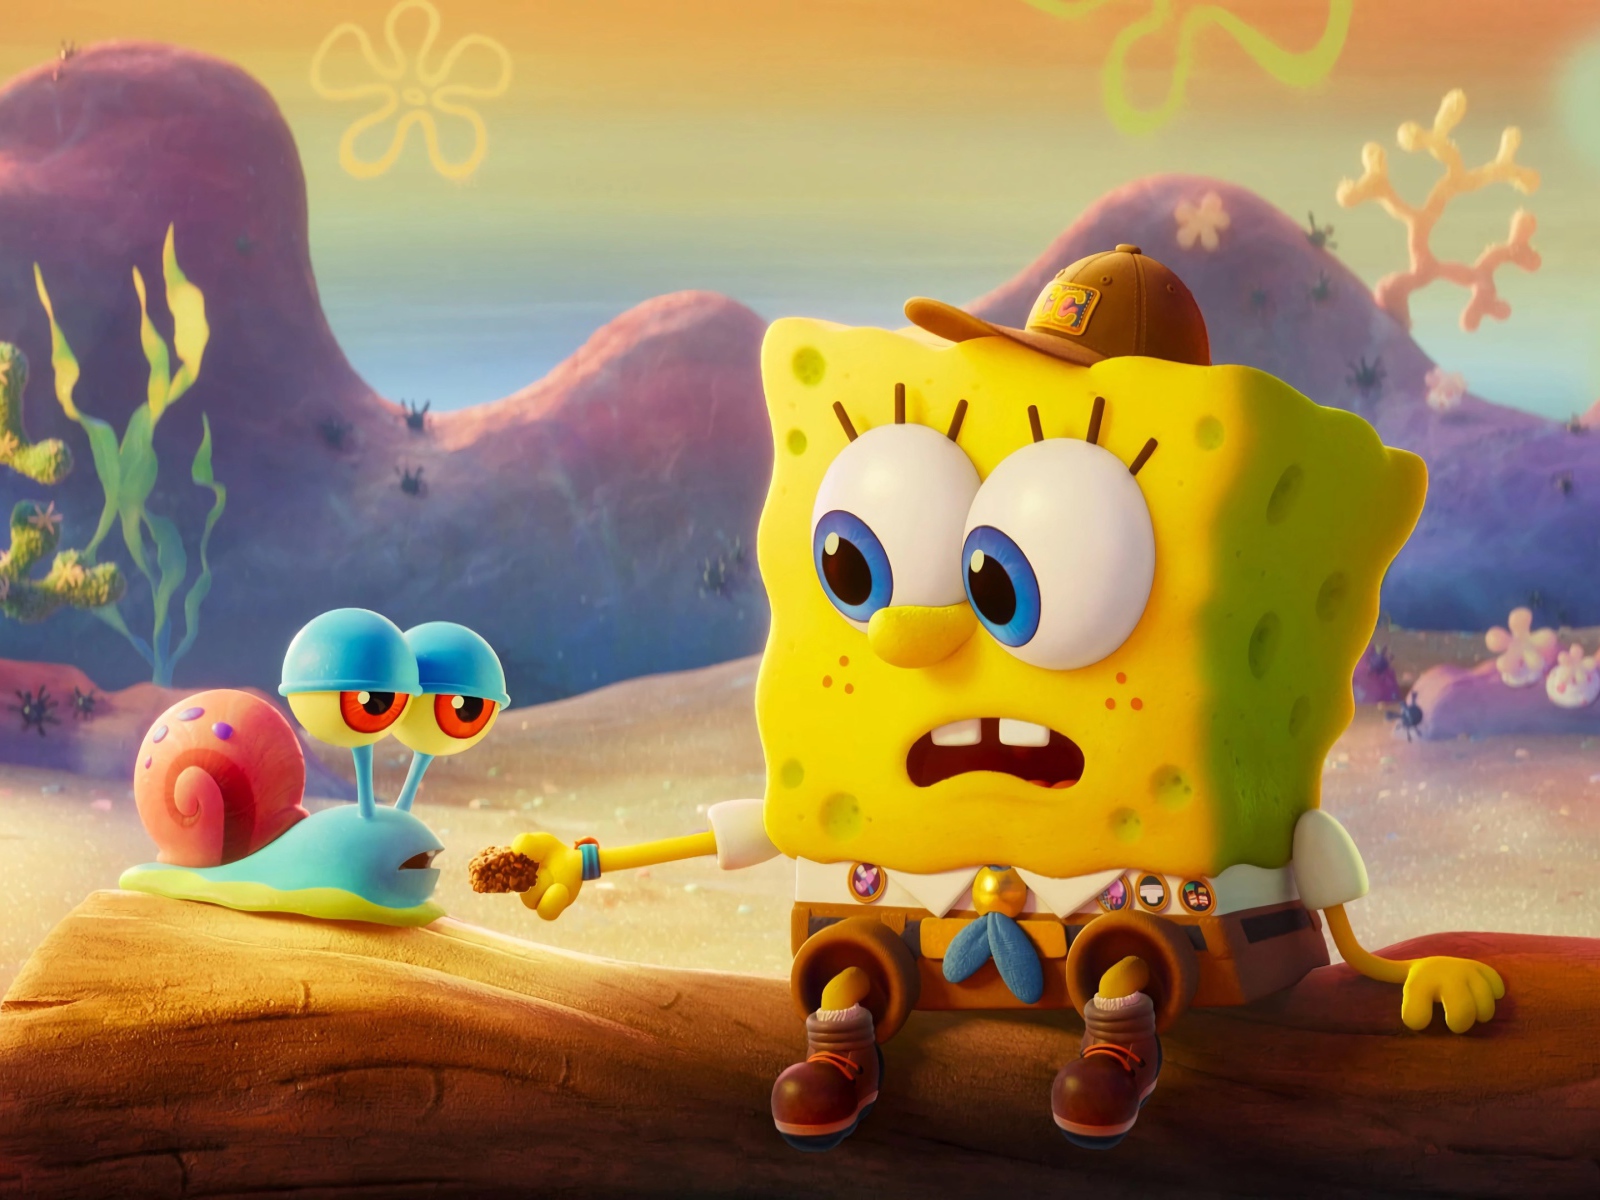 Two SpongeBob cartoon characters on the run, 2020 Desktop wallpapers  1600x1200